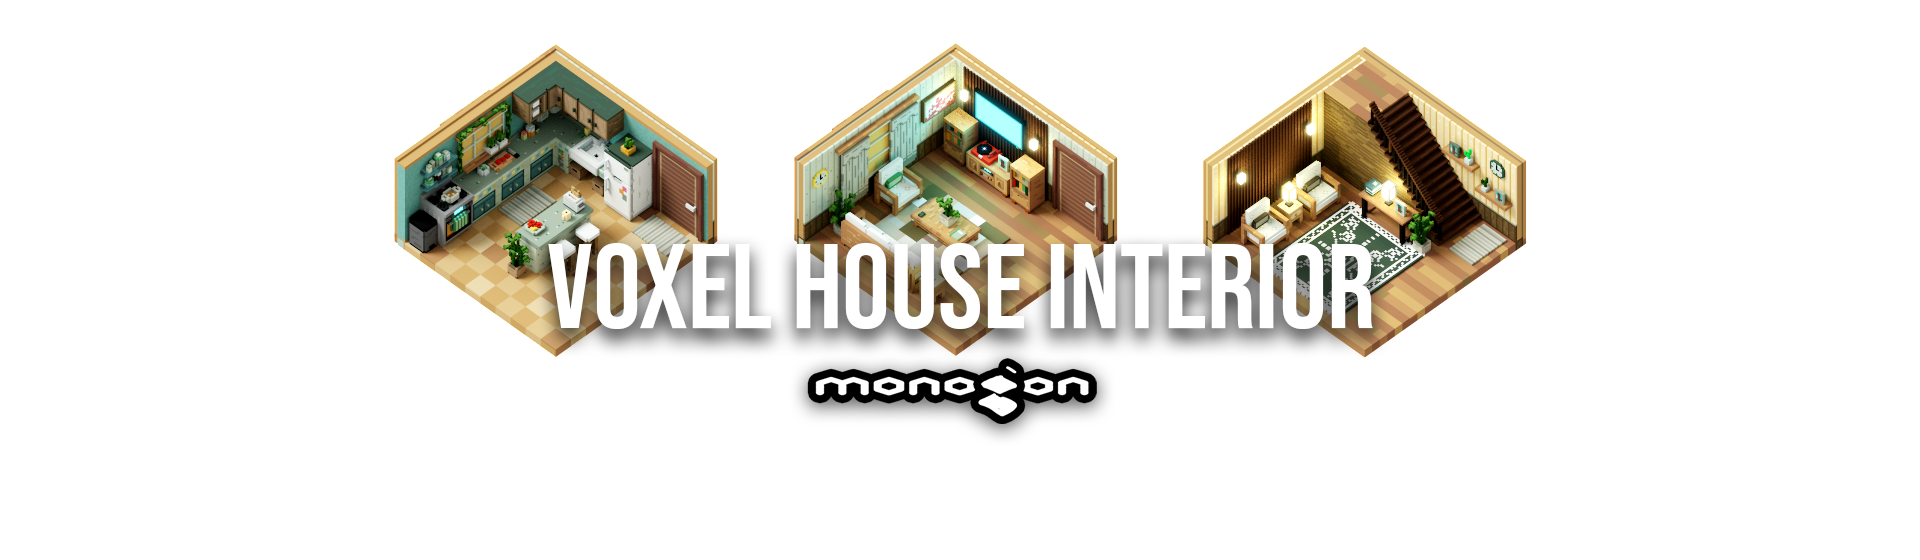 Voxel House Interior - monogon